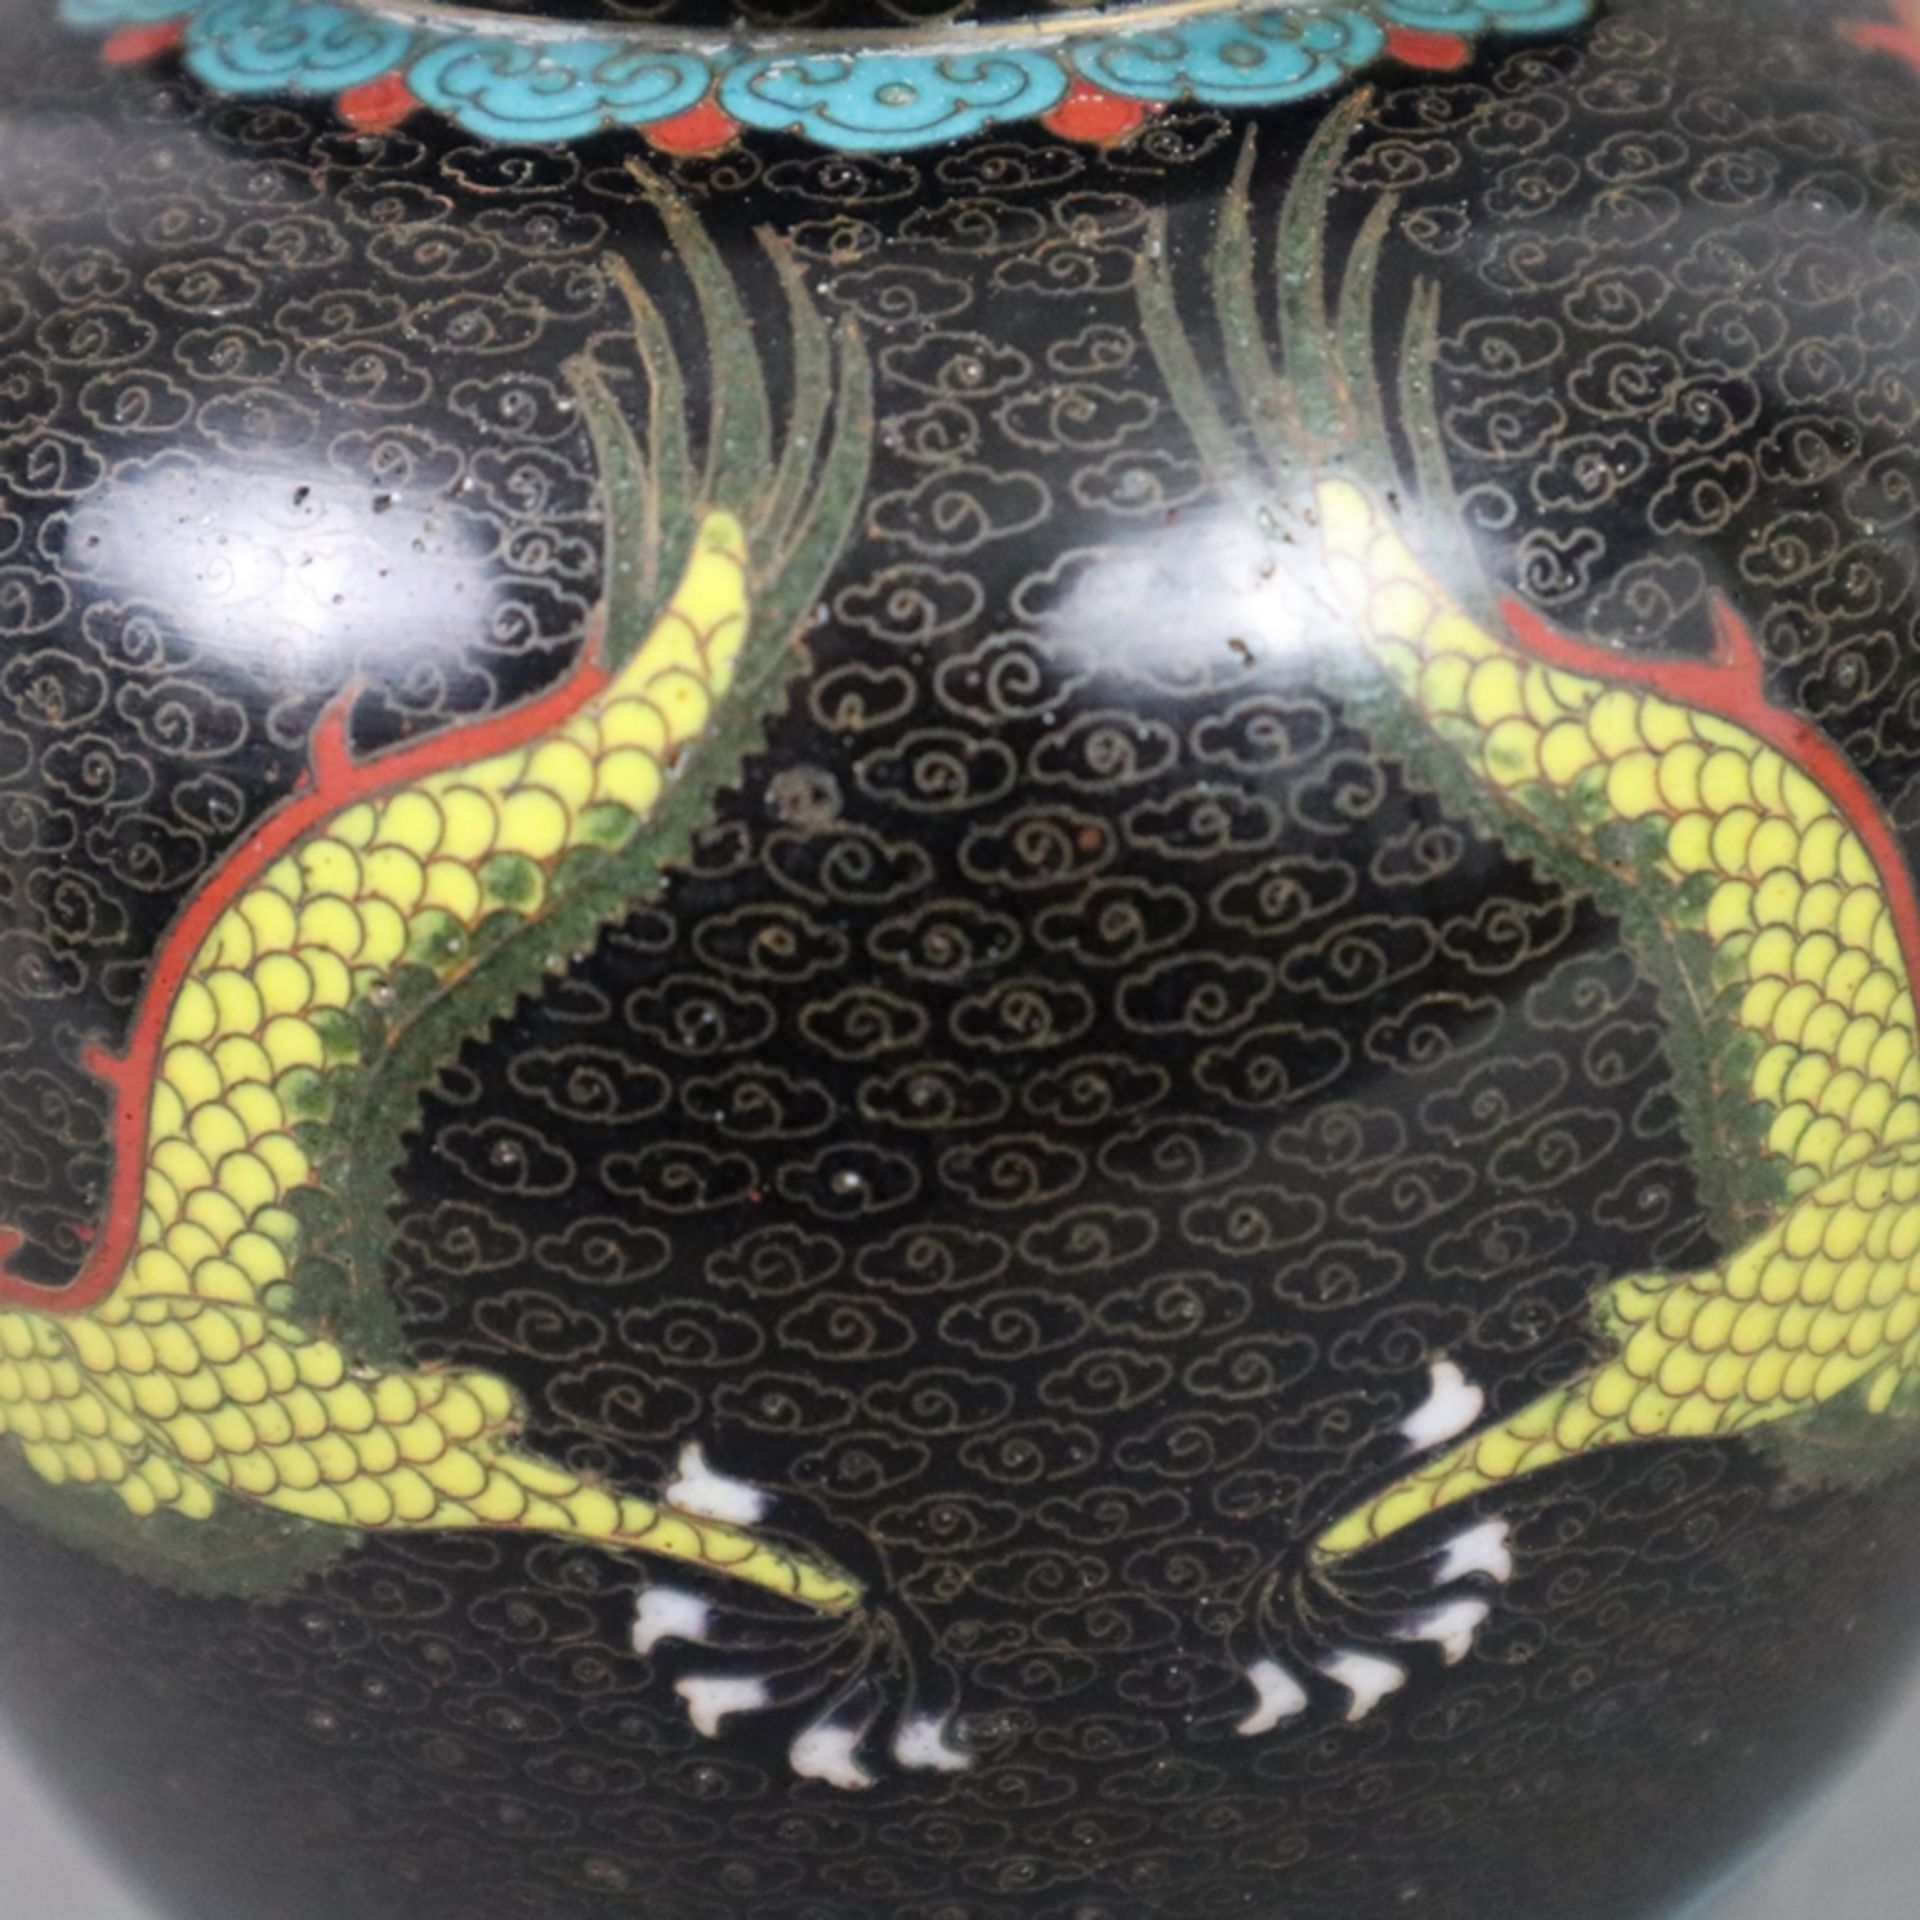 Cloisonné-Deckelvase mit Drachendekor - China, 20. Jh., Bronzelegierung, polychromes Email-Cloisonn - Bild 4 aus 7